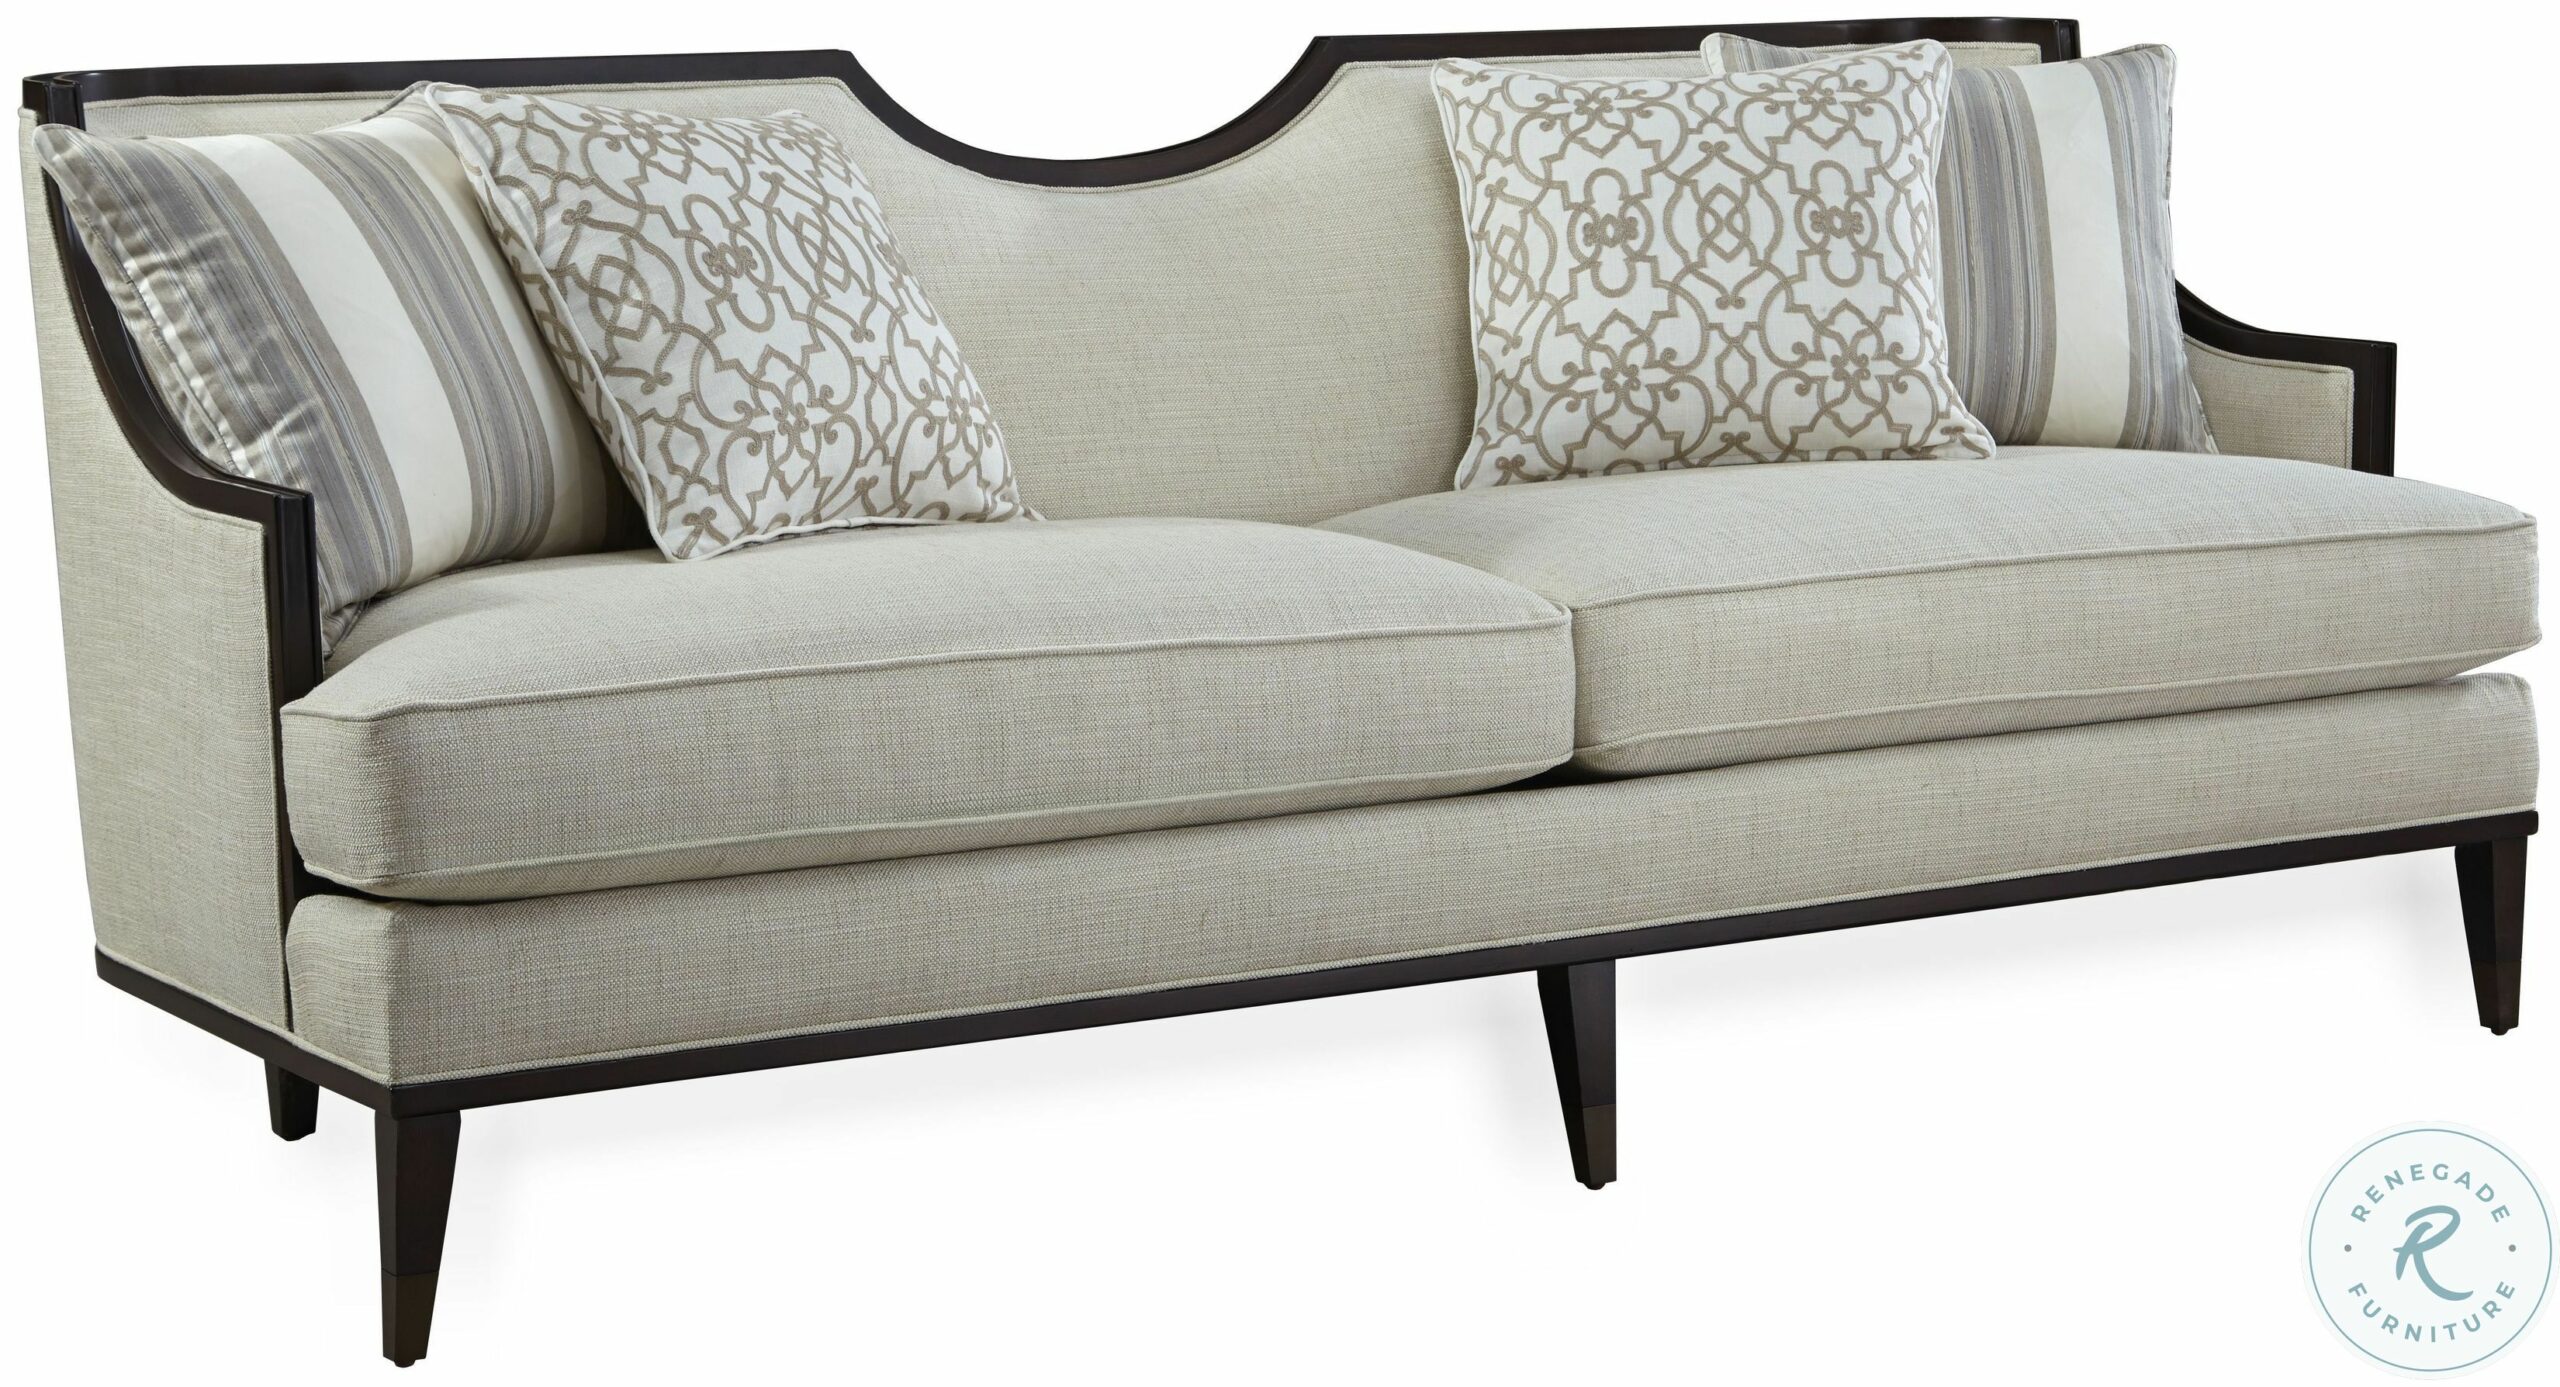 classic sofa design